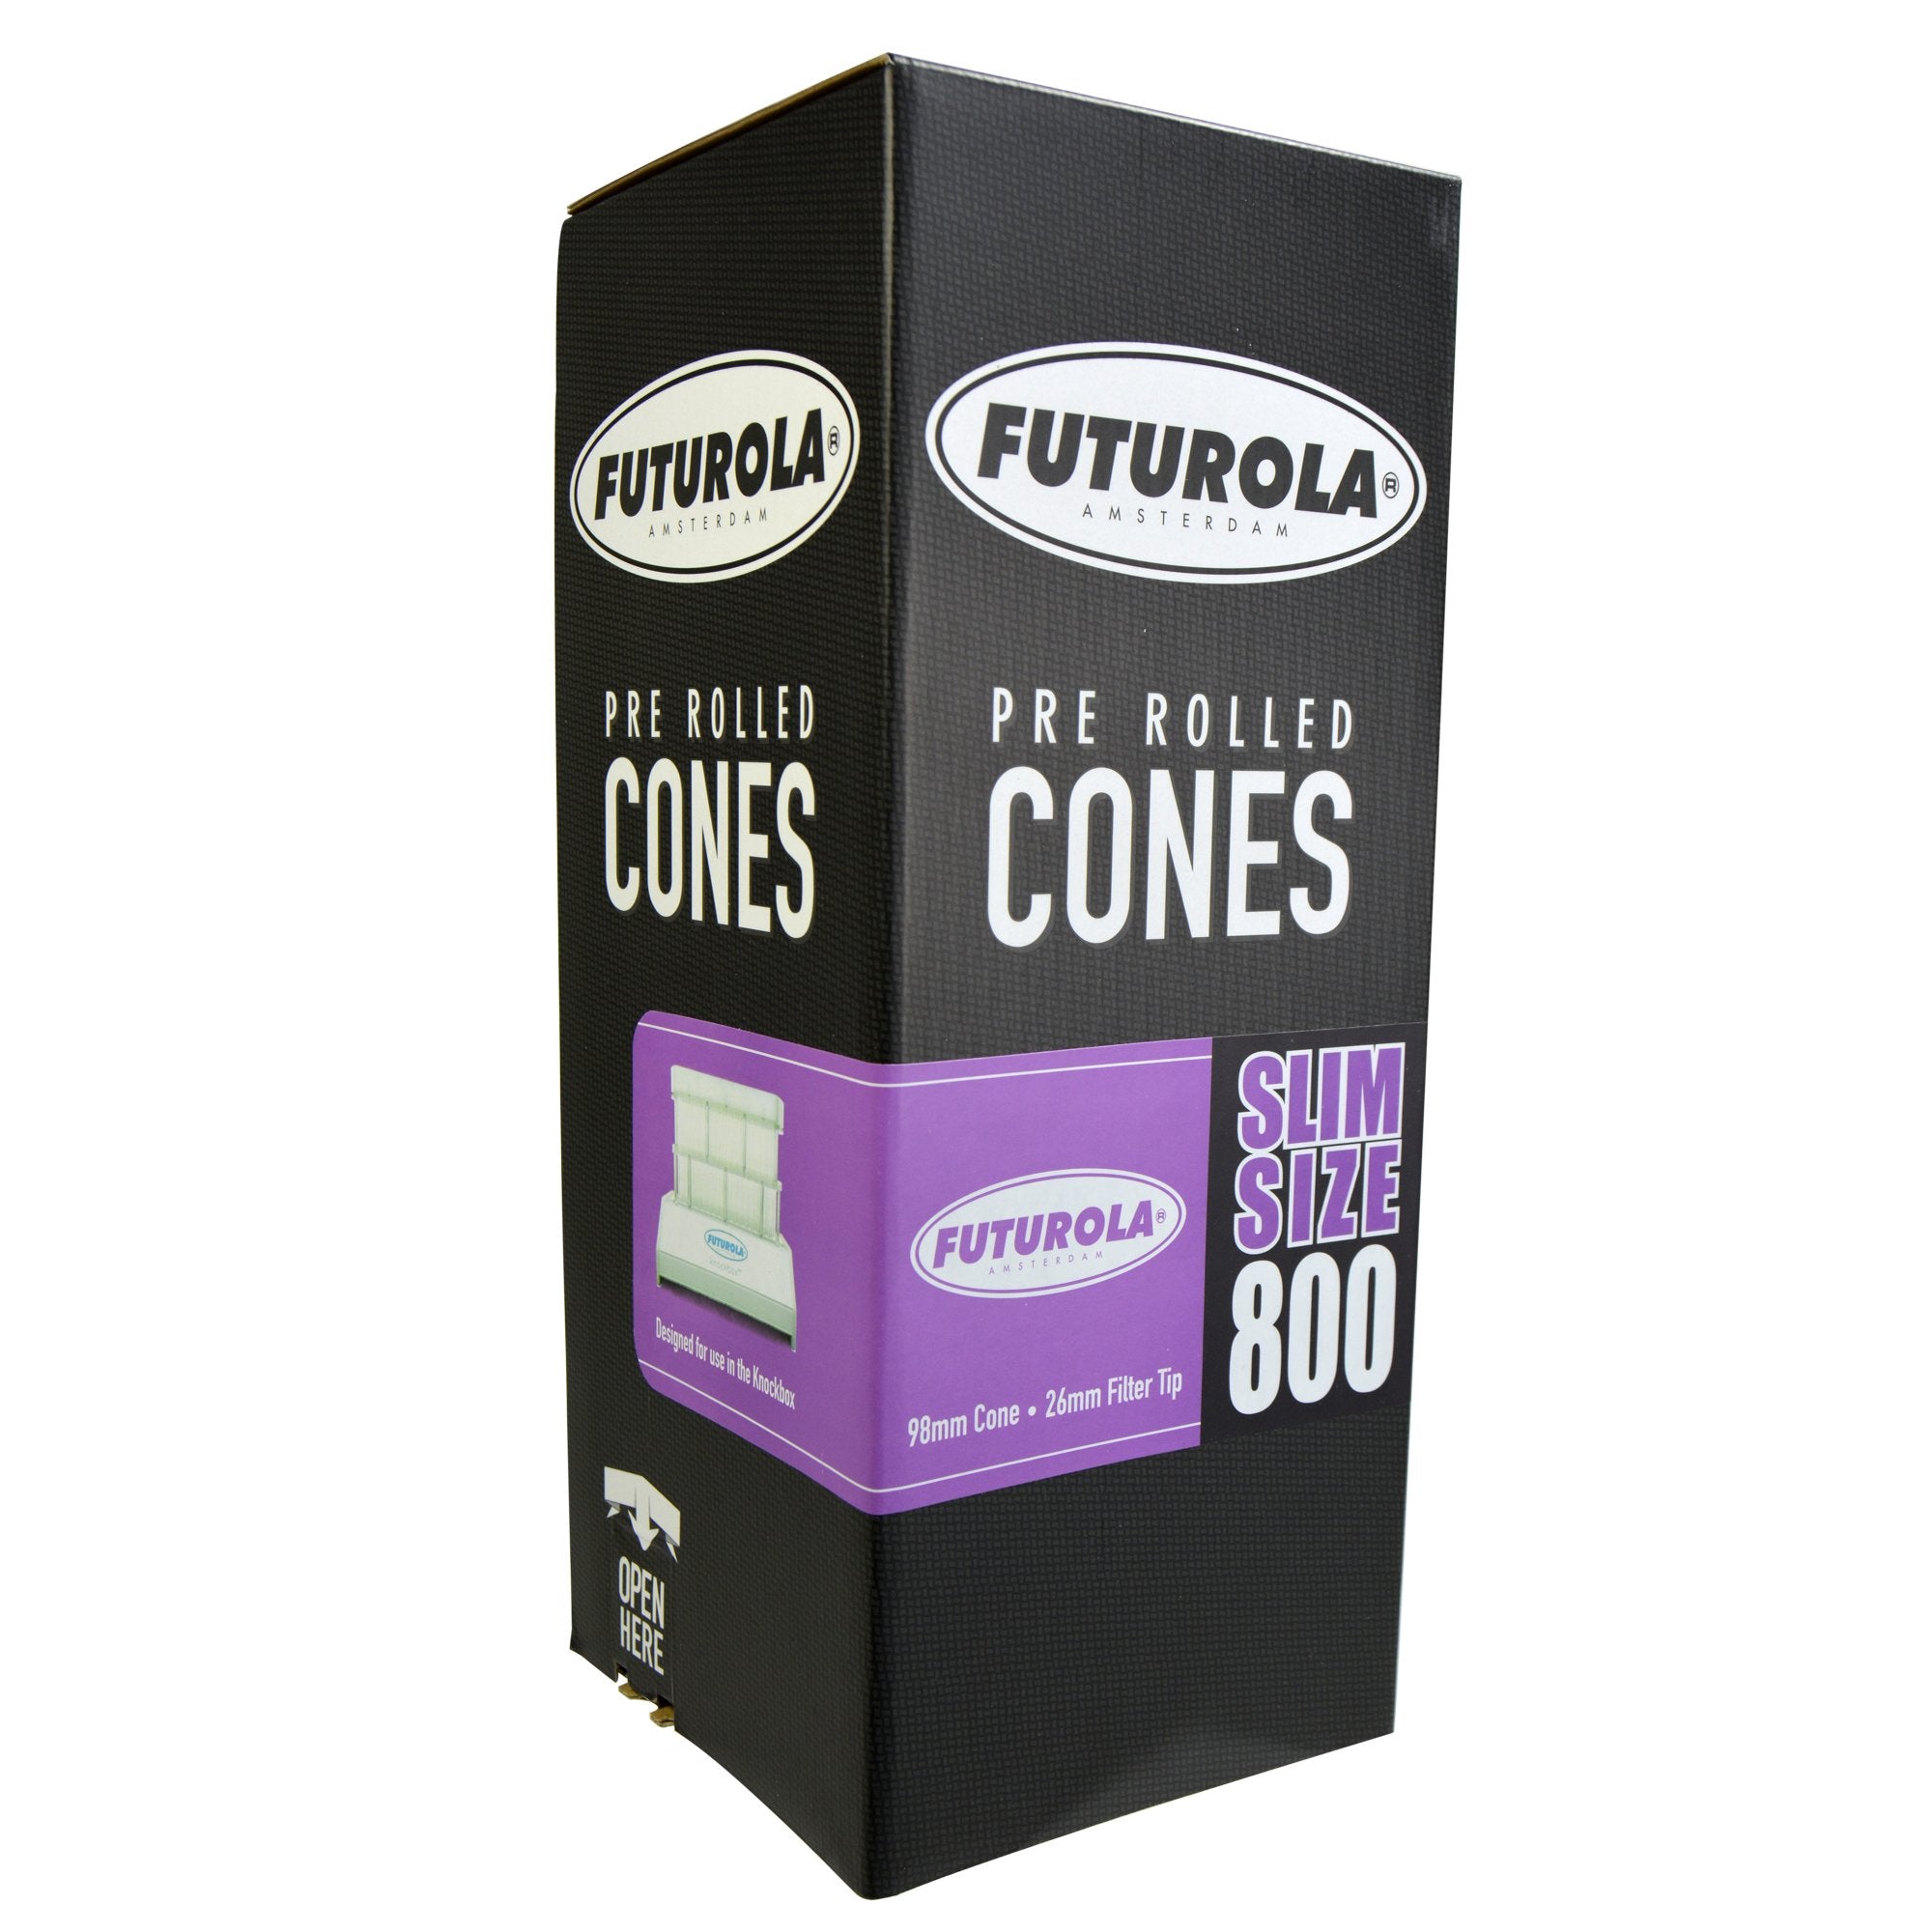 FUTUROLA | Slim Size Pre-Rolled Cones | 98mm - Classic White Paper - 800 Count - 1